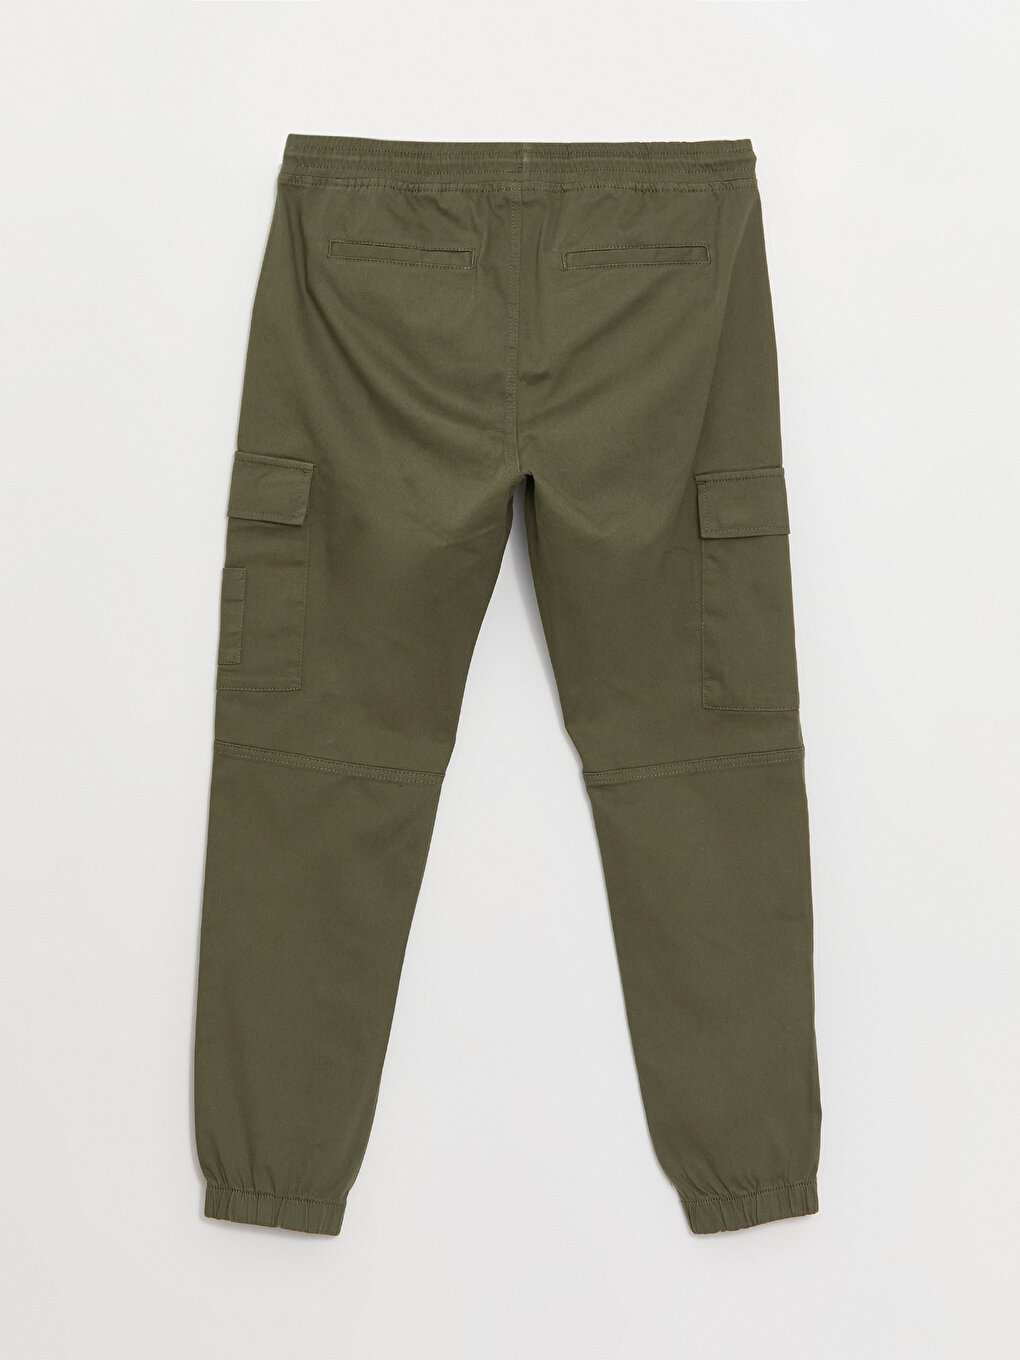 Regular Fit Ripstop Cargo Pants - Light beige - Men | H&M US